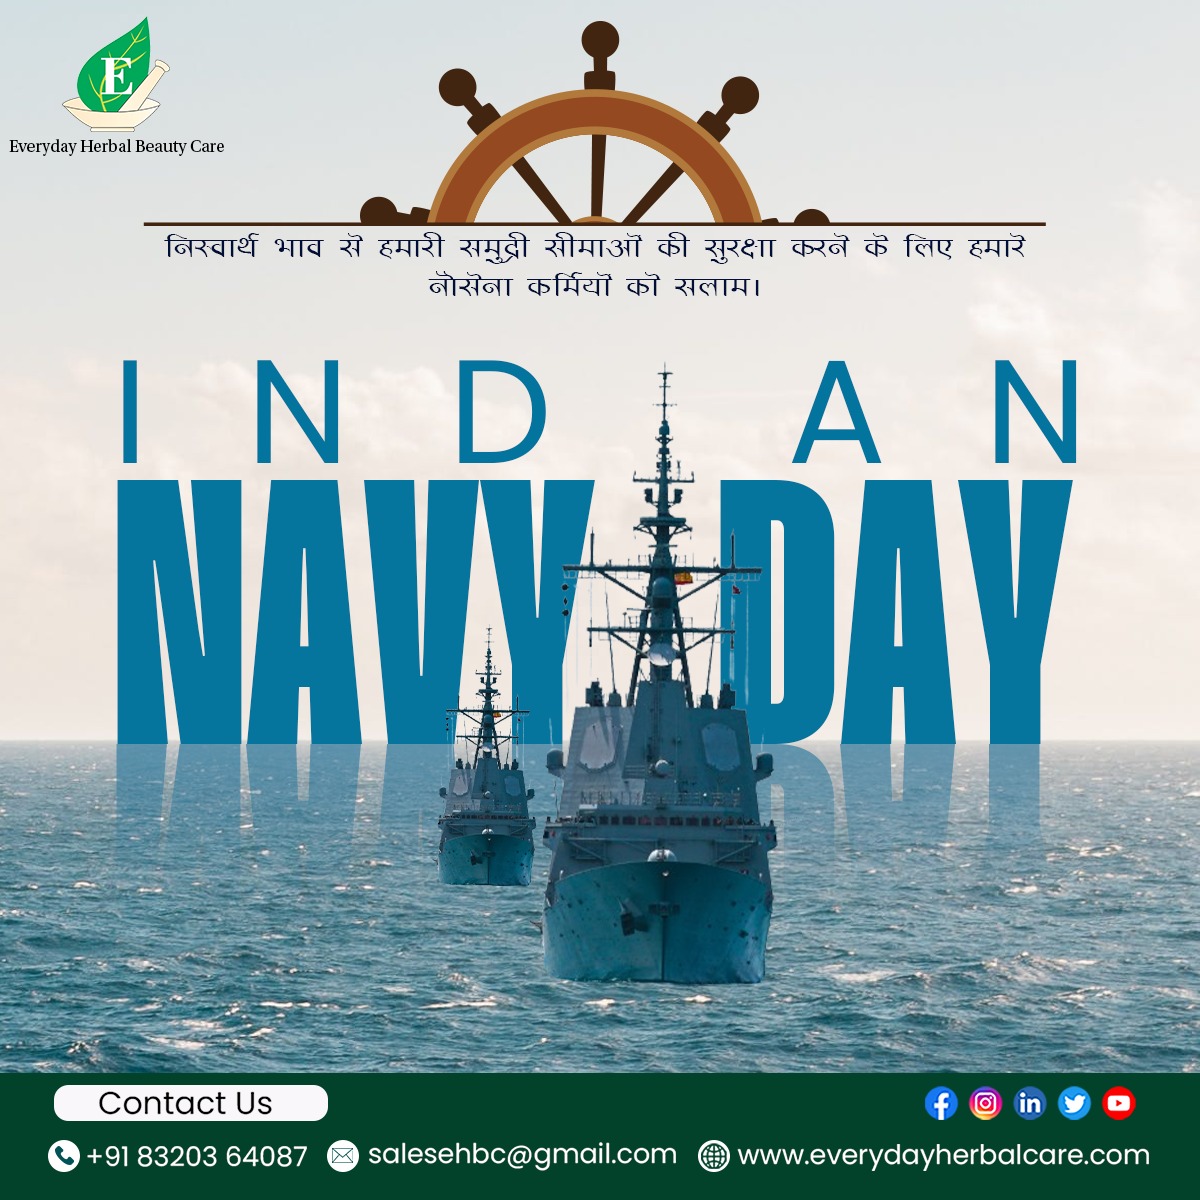 Happy Navy Day!!”⛴️⚓
.
#navyday #indiannavyday #indiannavy #navy #jaihind #indianarmy #indianairforce #navylife #indiannavyship #indiannavyofficers #indiannavypride #indiannavylovers #indiannavymarcos #india #navydays #happyindiannavyday